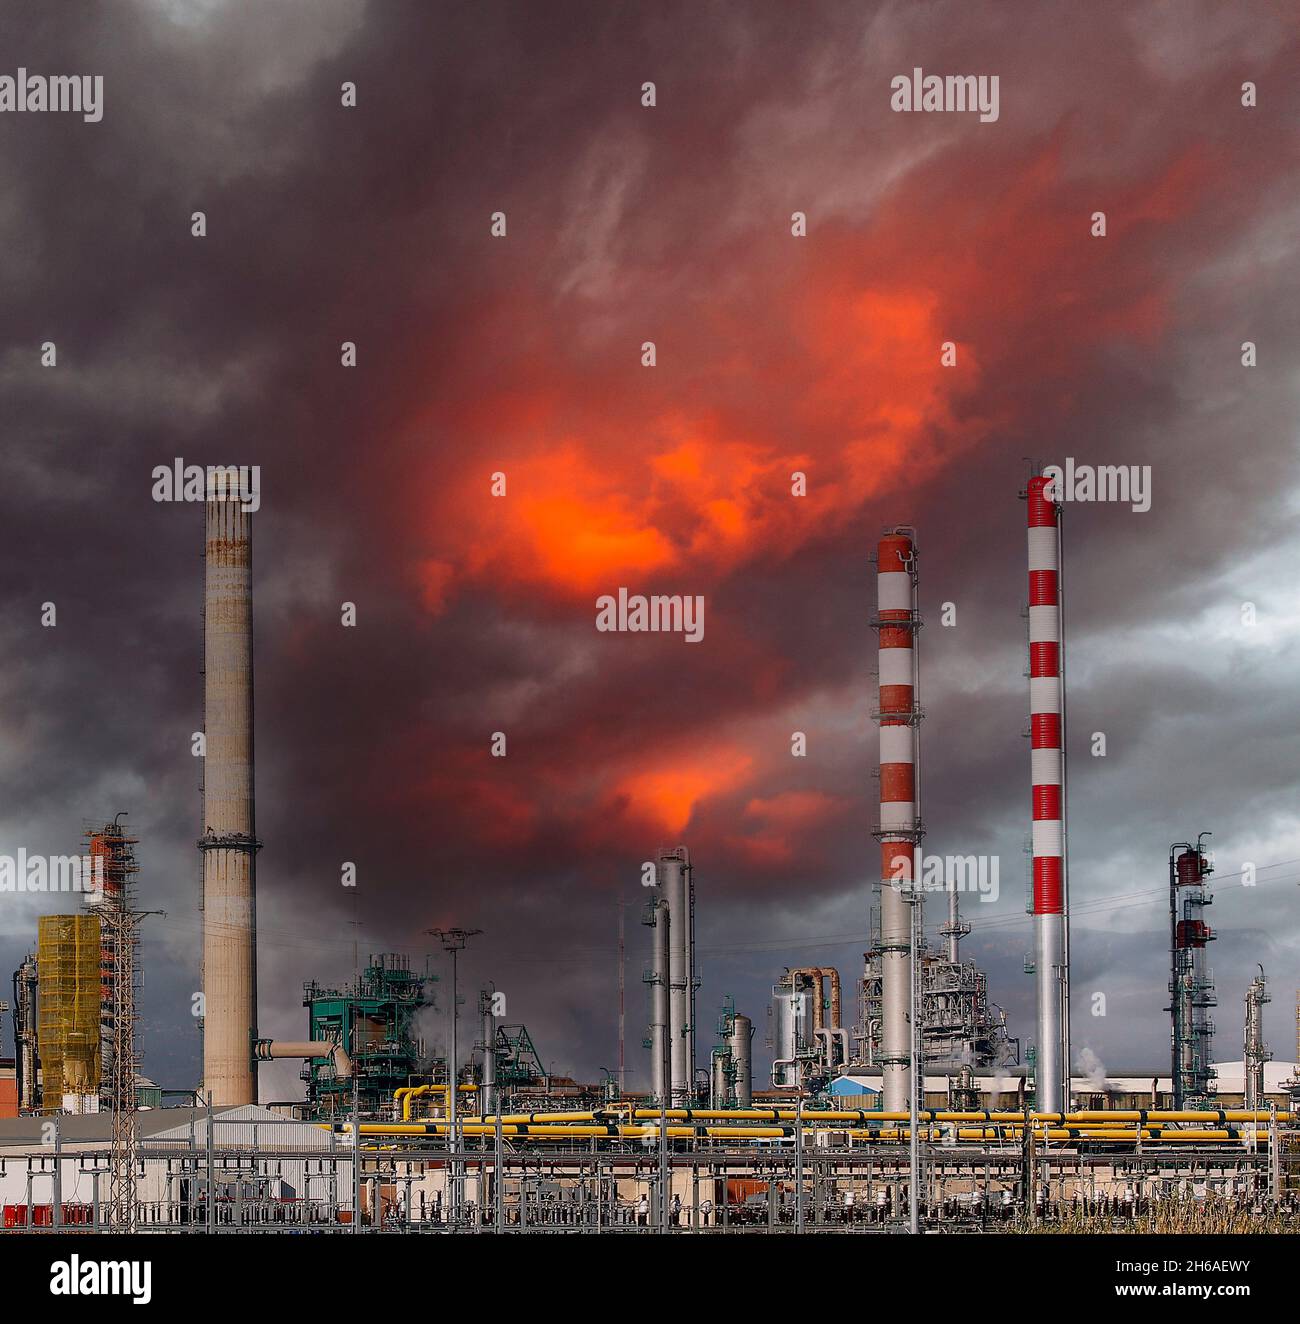 Gran complejo de refinería de petróleo, con chimeneas y torres Foto de stock